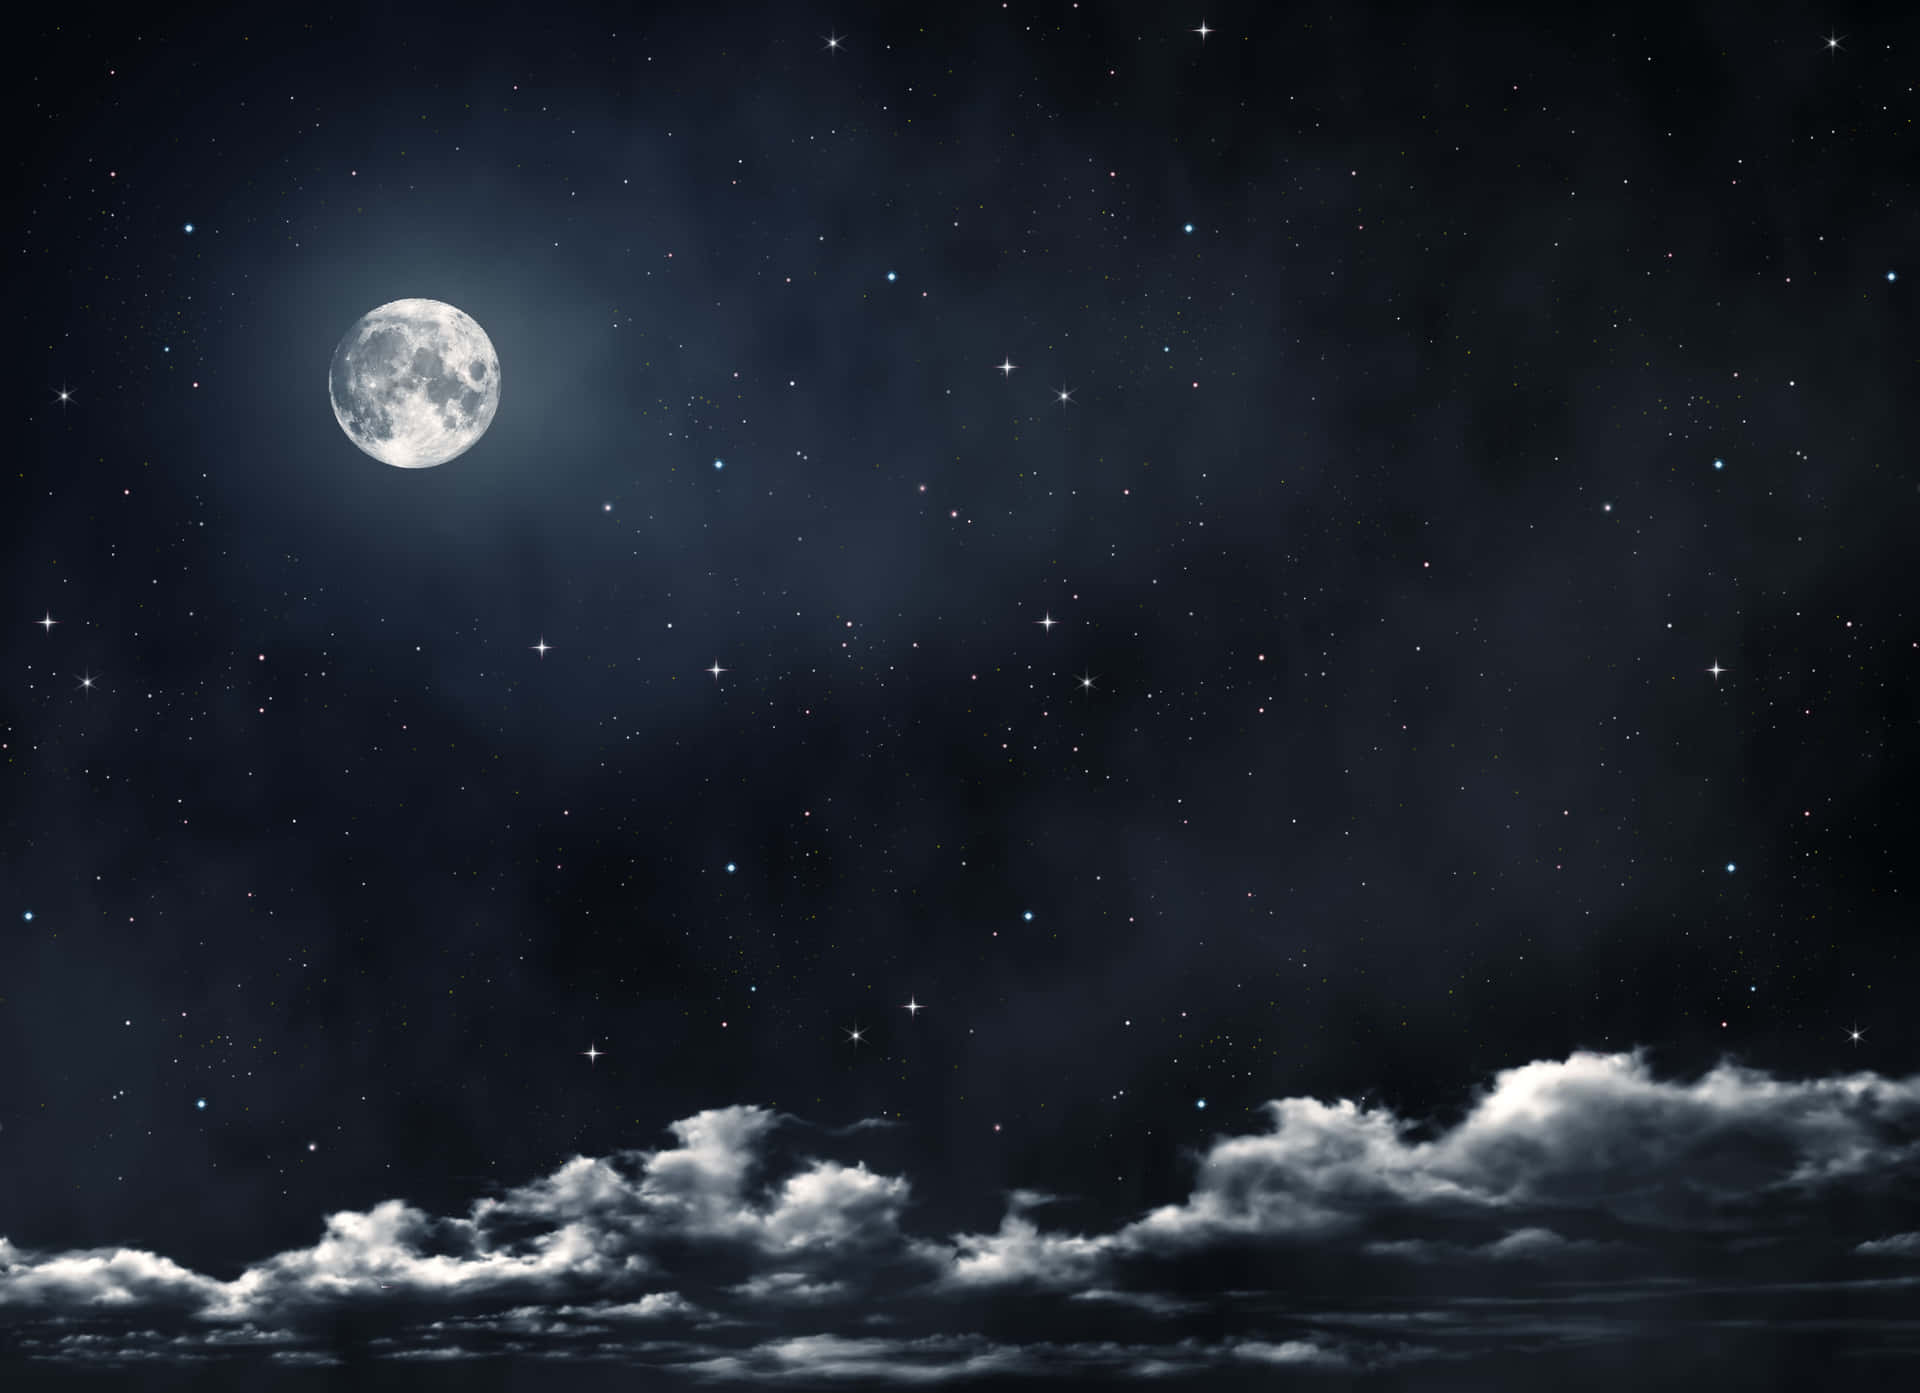 Cielonocturno Iluminado Por La Luna Con Estrellas.